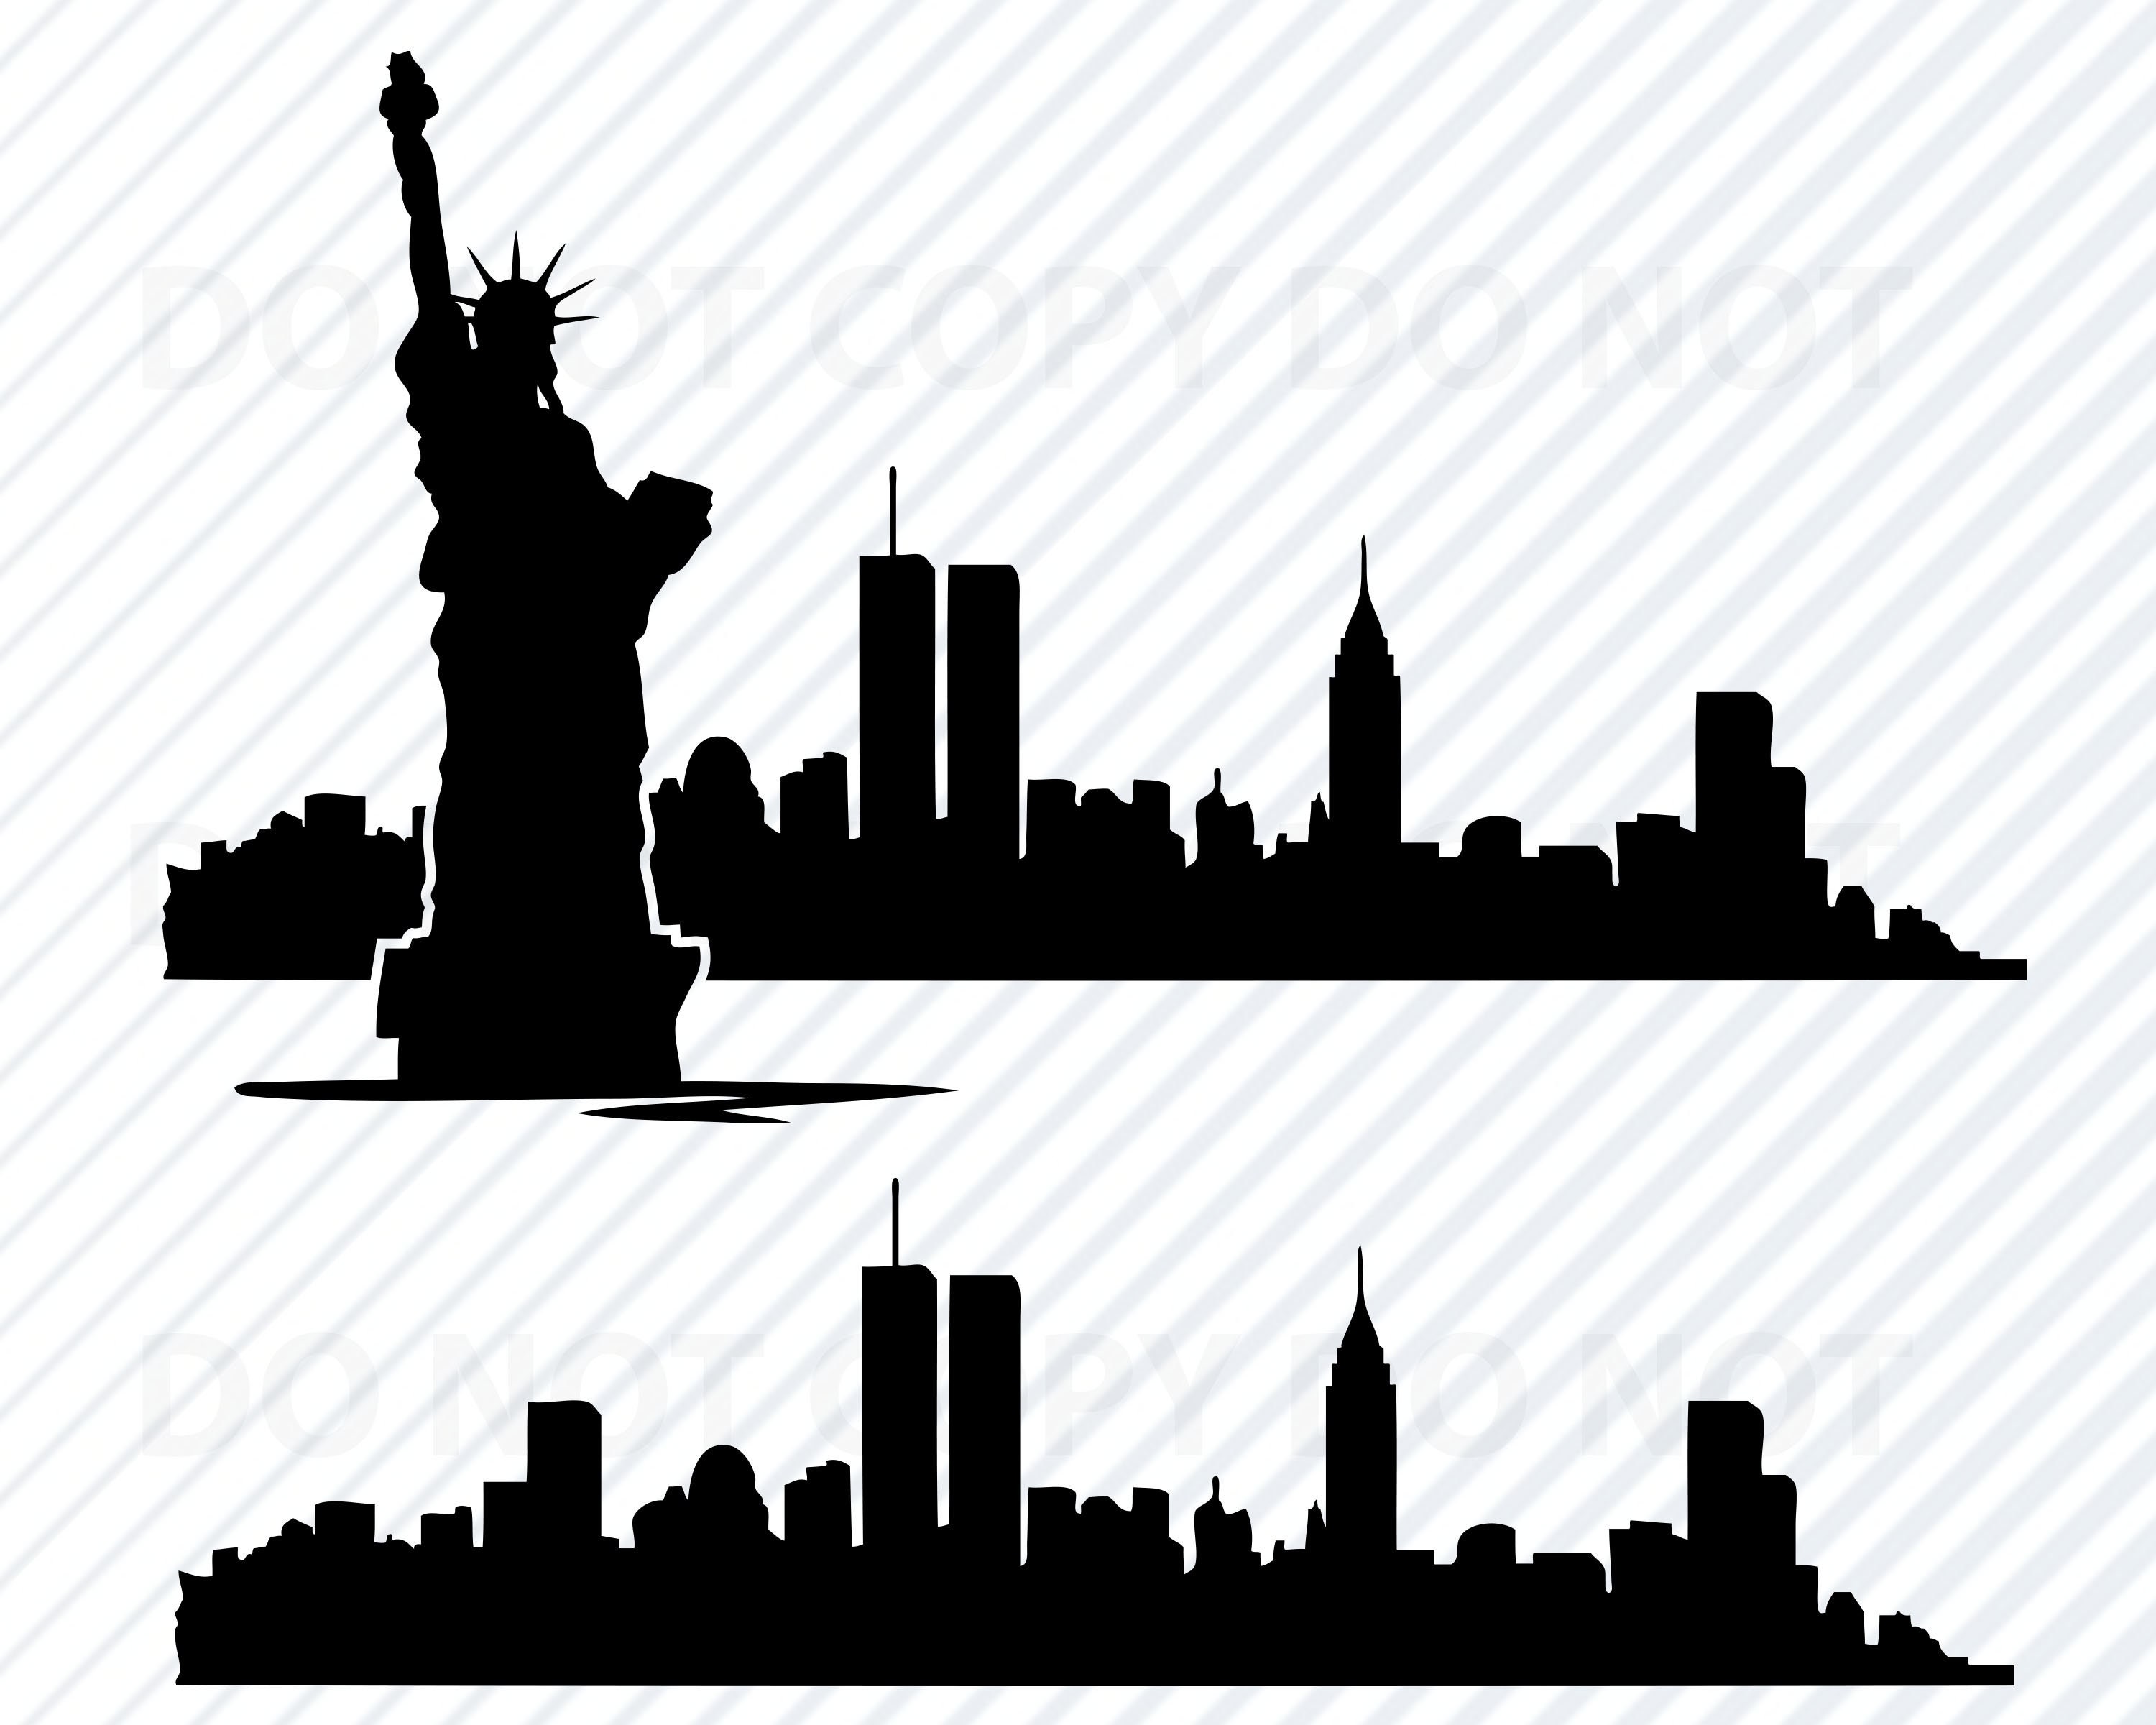 New York City Skyline Stencil